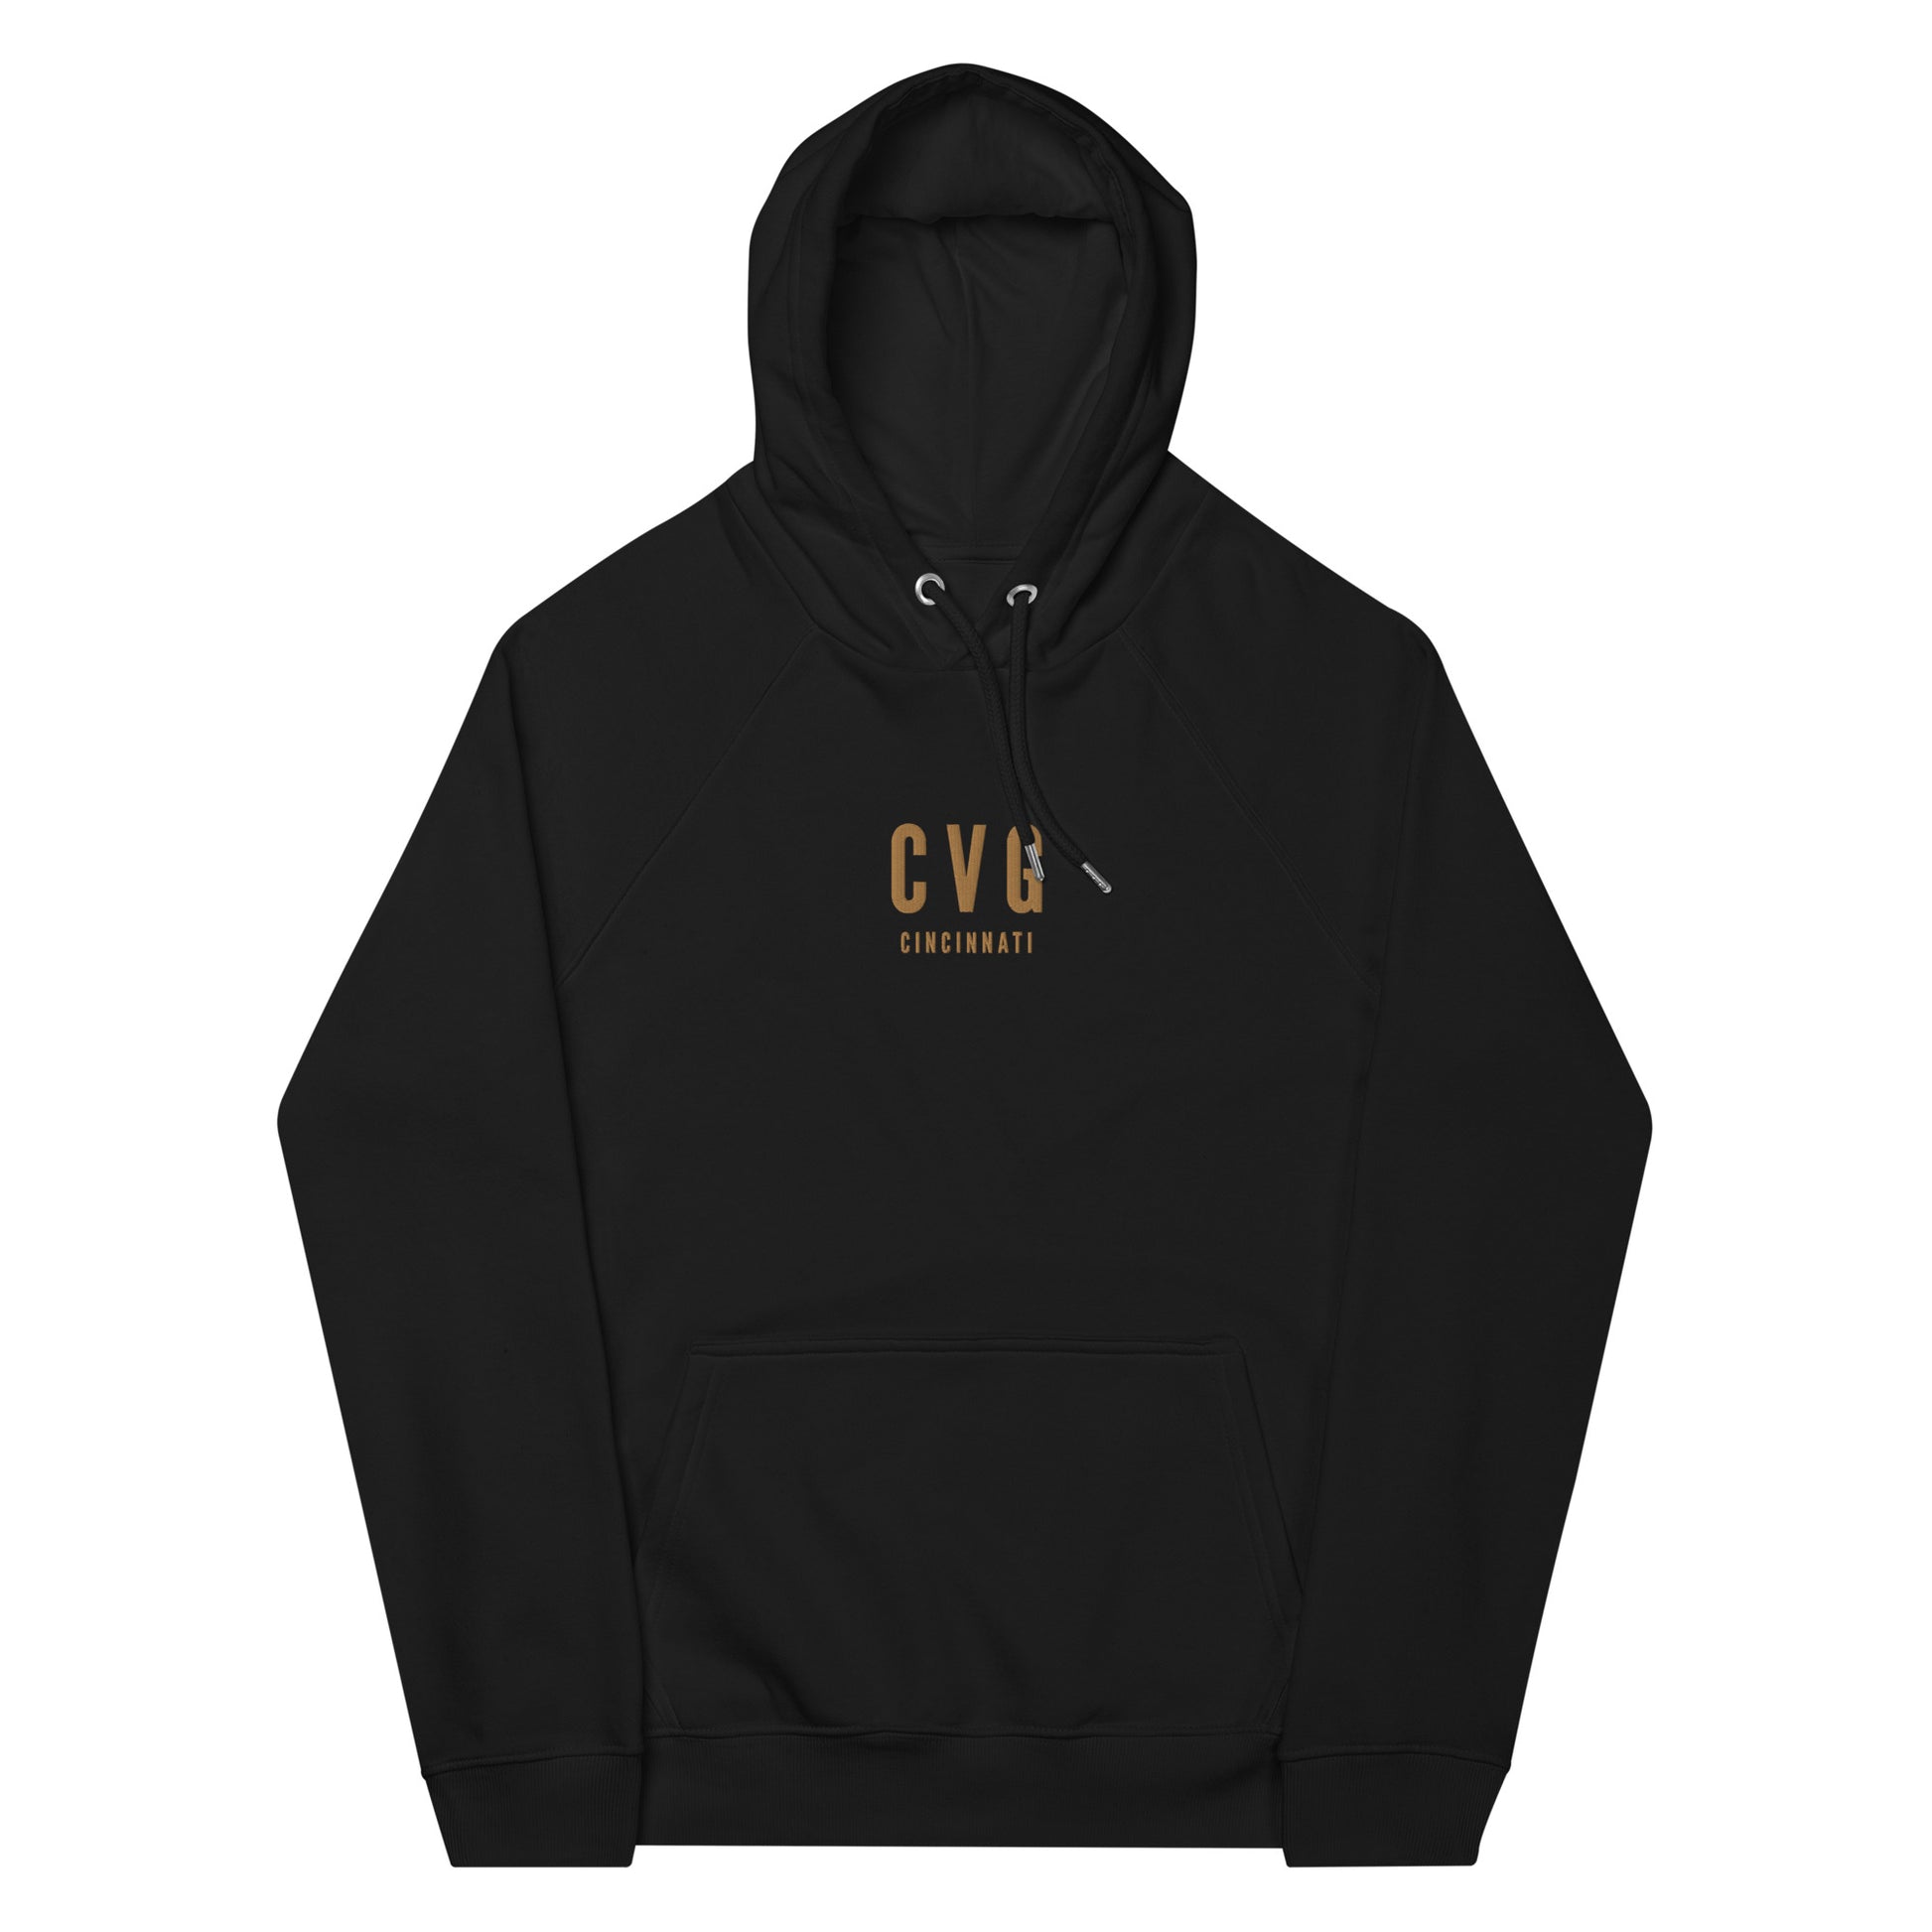 City Organic Hoodie - Old Gold • CVG Cincinnati • YHM Designs - Image 10